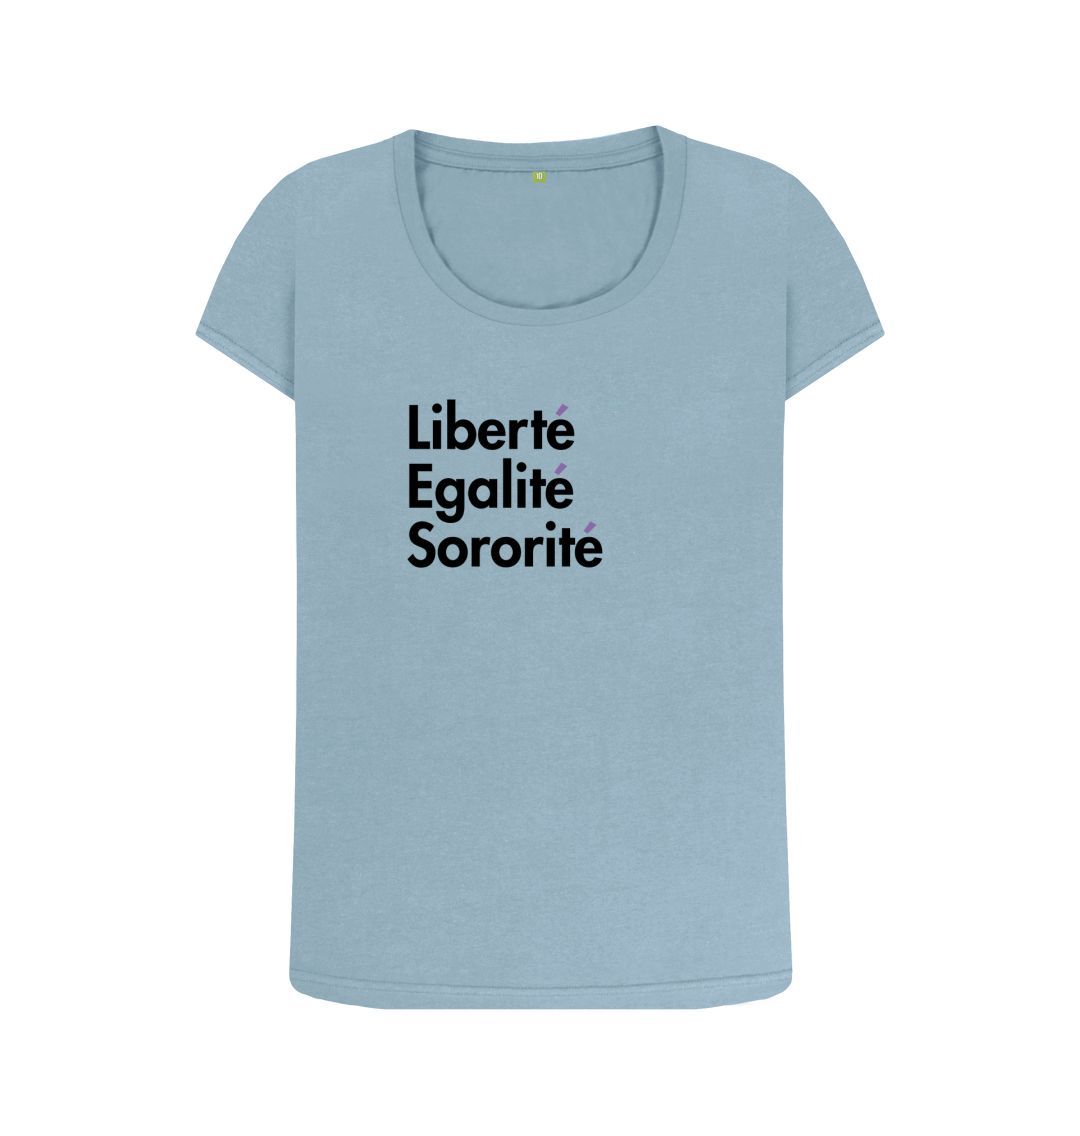 Stone Blue Open Neck Feminist T shirt - Libert\u00e9, Egalit\u00e9, Sororit\u00e9